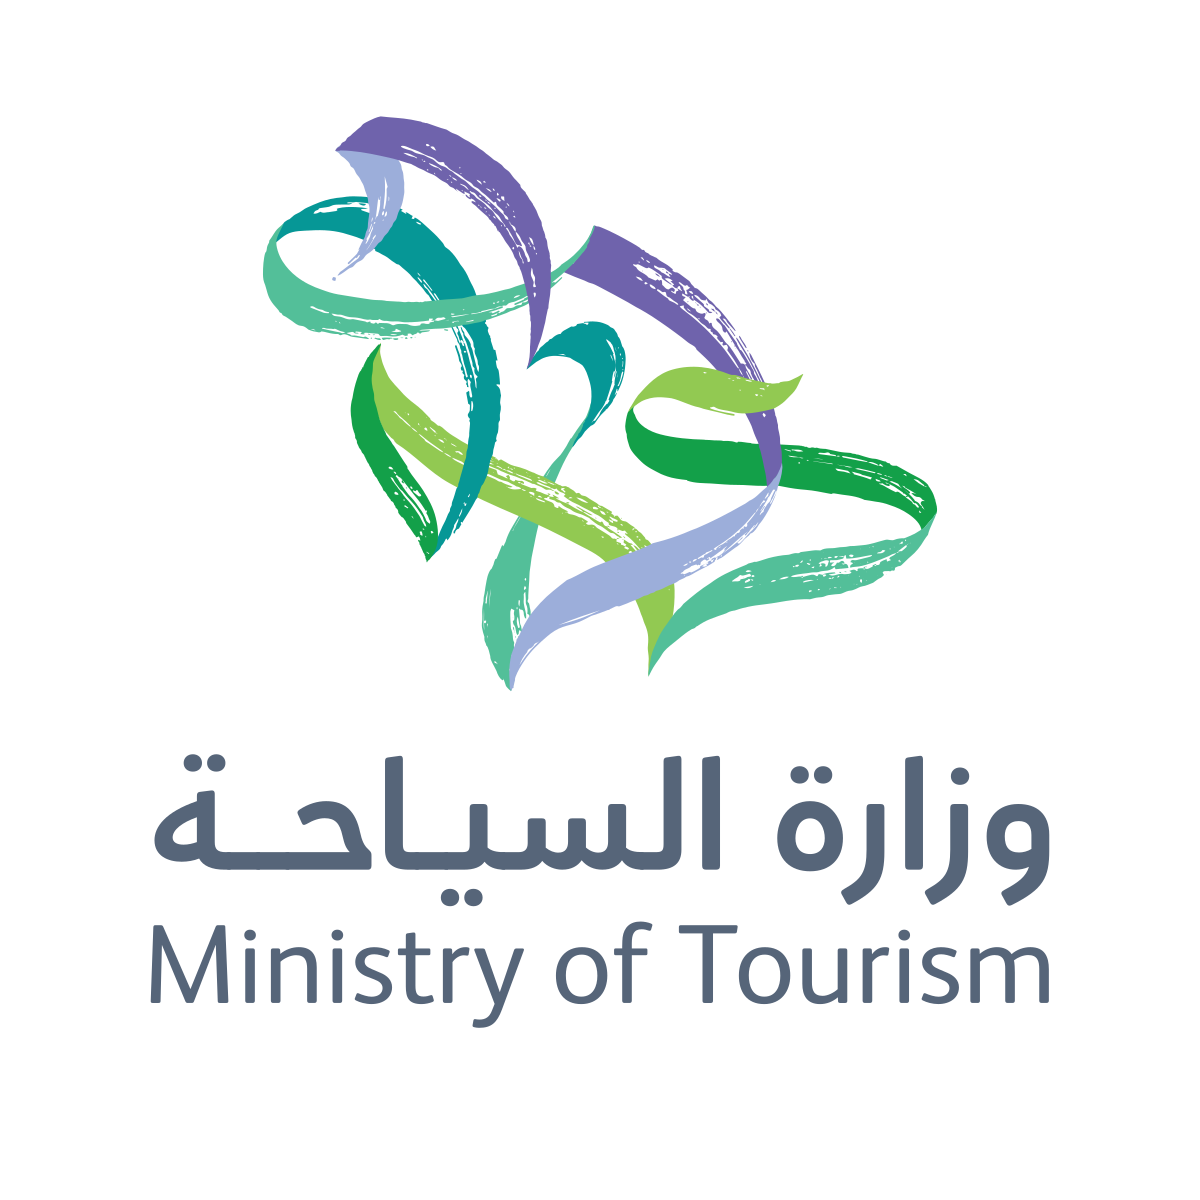 الهيئة السعودية للسياحة تعلن عن وظائف شاغرة في تخصصات عديدة